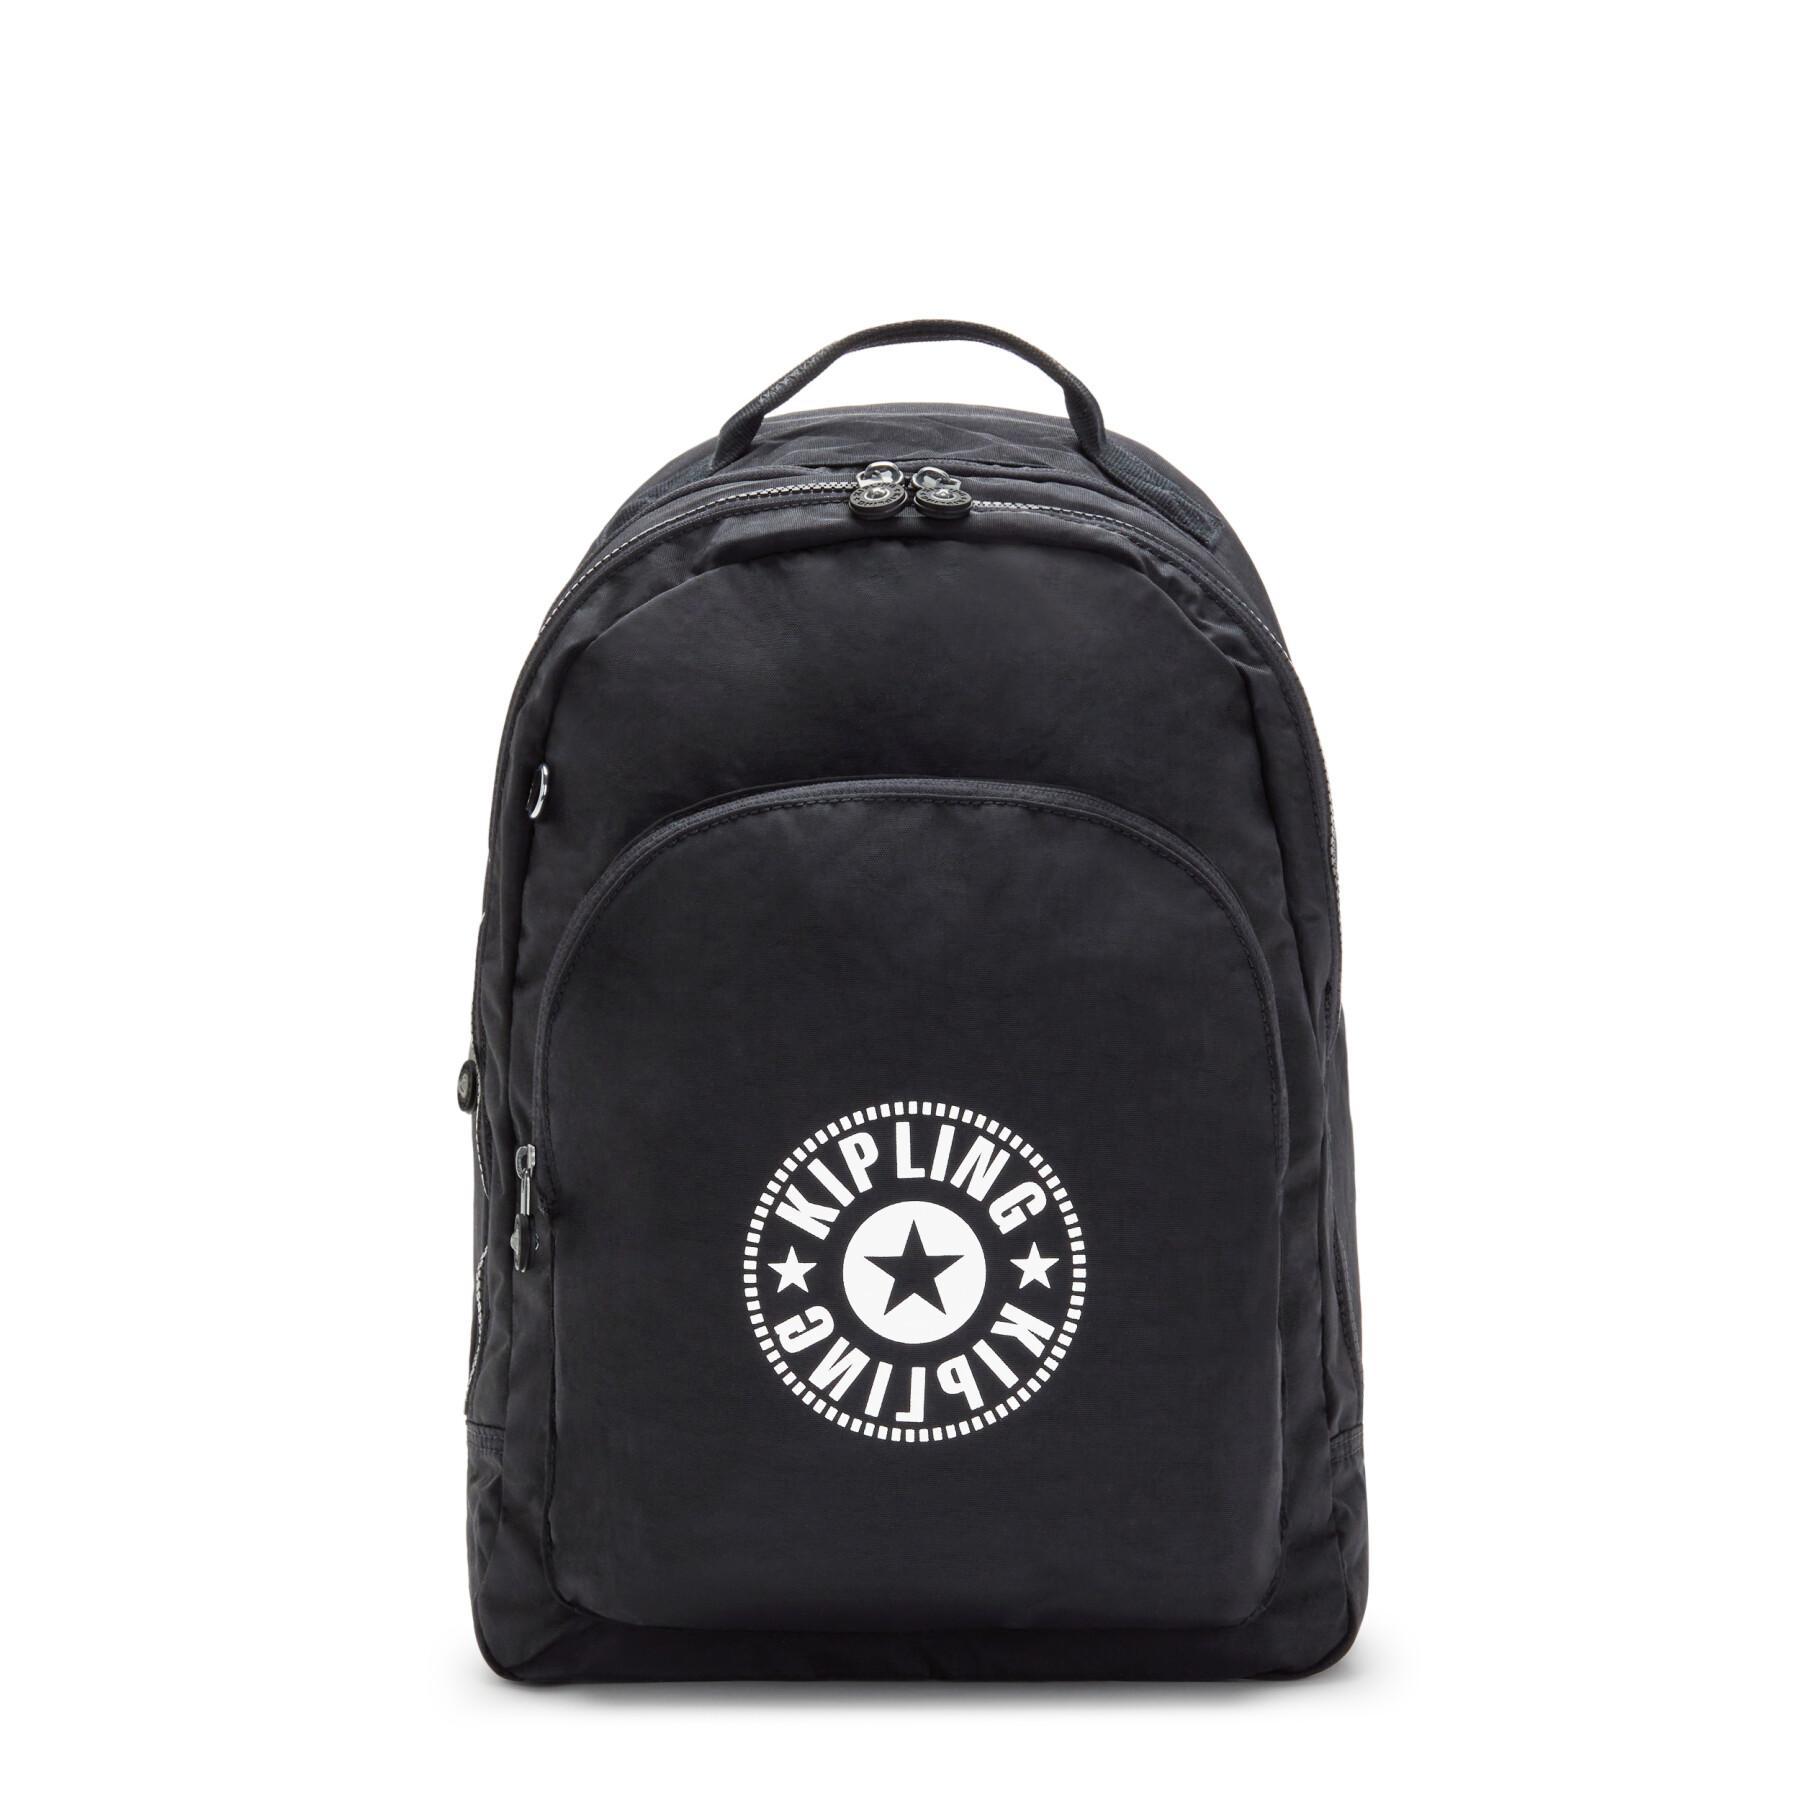 Backpack Kipling Curtis XL Cen Black Lite